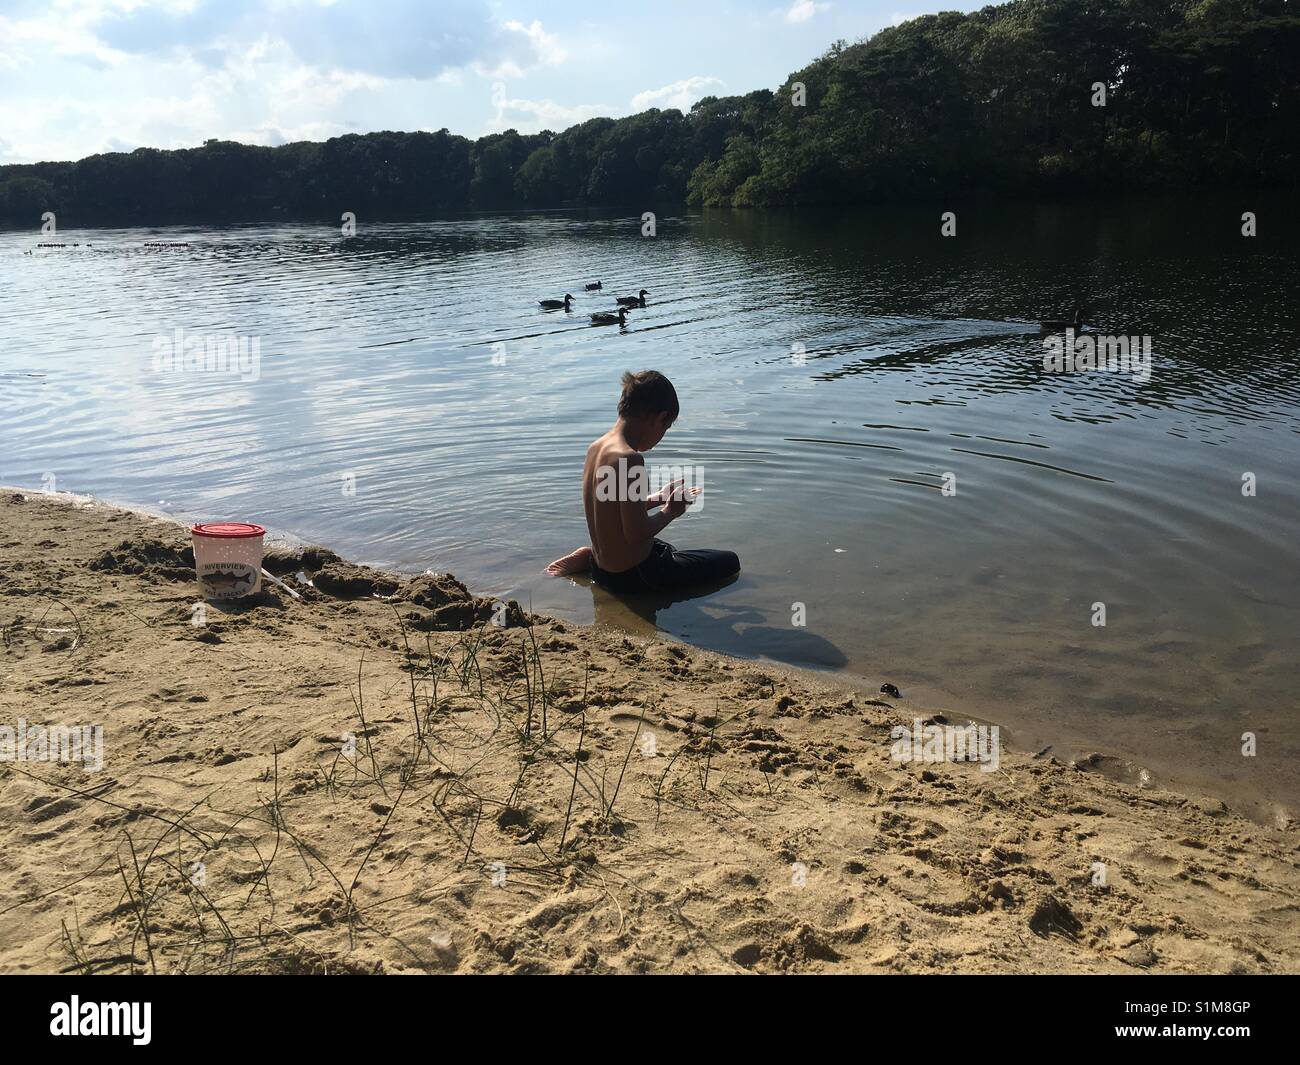 Un garçon dans un lac, les canards en arrière-plan Banque D'Images